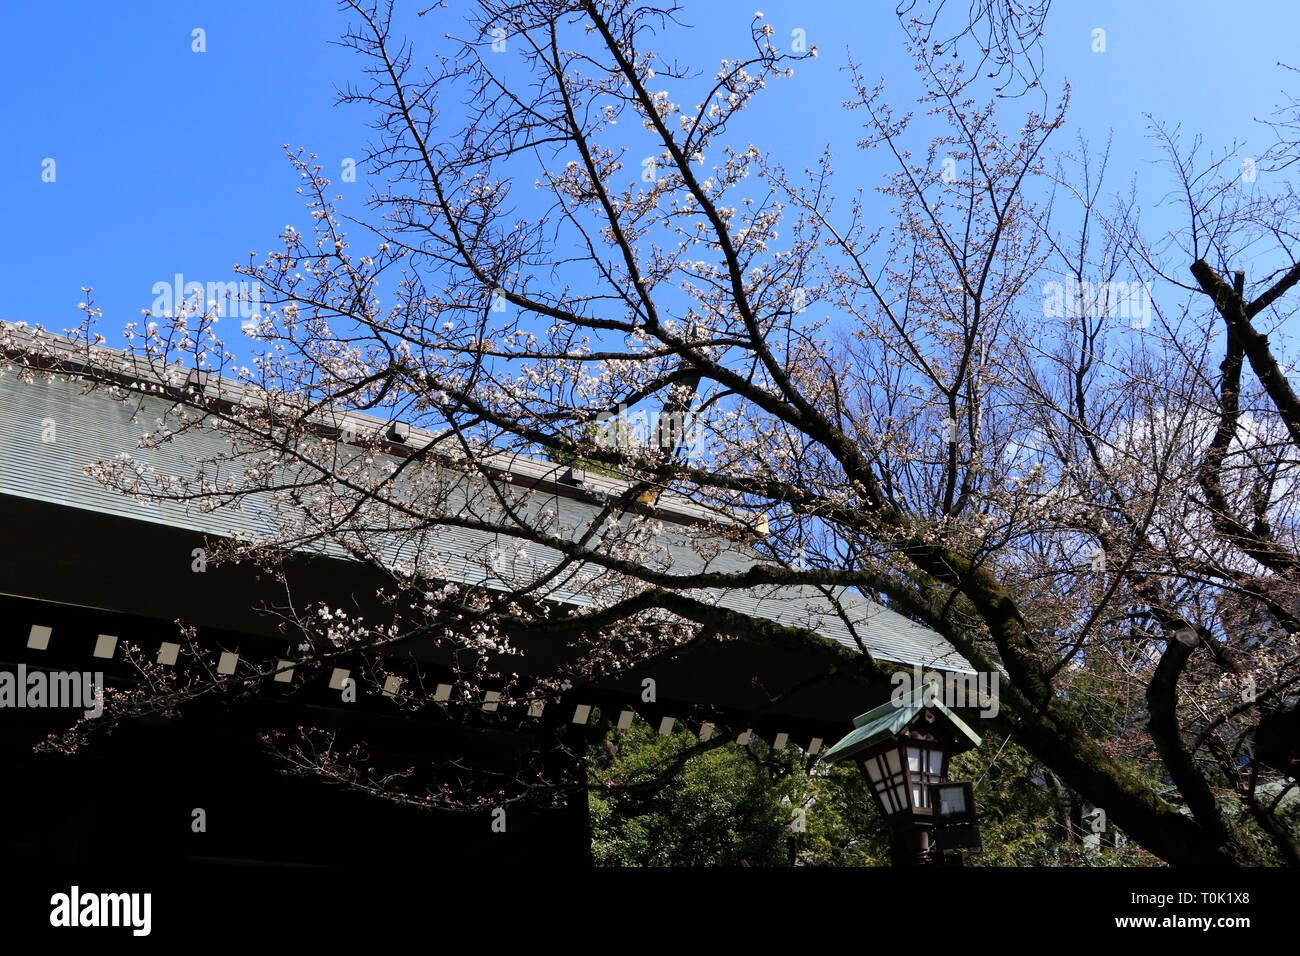 Tokyo, Giappone. Xxi Mar, 2019. La fioritura dei ciliegi cominciano a fiorire a Tokyo il 21 marzo, festa nazionale come l'equinozio di primavera. Essa è segnalata dall'Agenzia Meteorologica osservando il campione ciliegio nel Santuario Yasukuni. Molte persone ha raccolto per attendere l'annuncio intorno all'albero. È stato riportato come ultime notizie. L'altro albero ciliegio nel santuario è anche la fioritura. Credito: Miyoko Fukushima/Alamy Live News Foto Stock